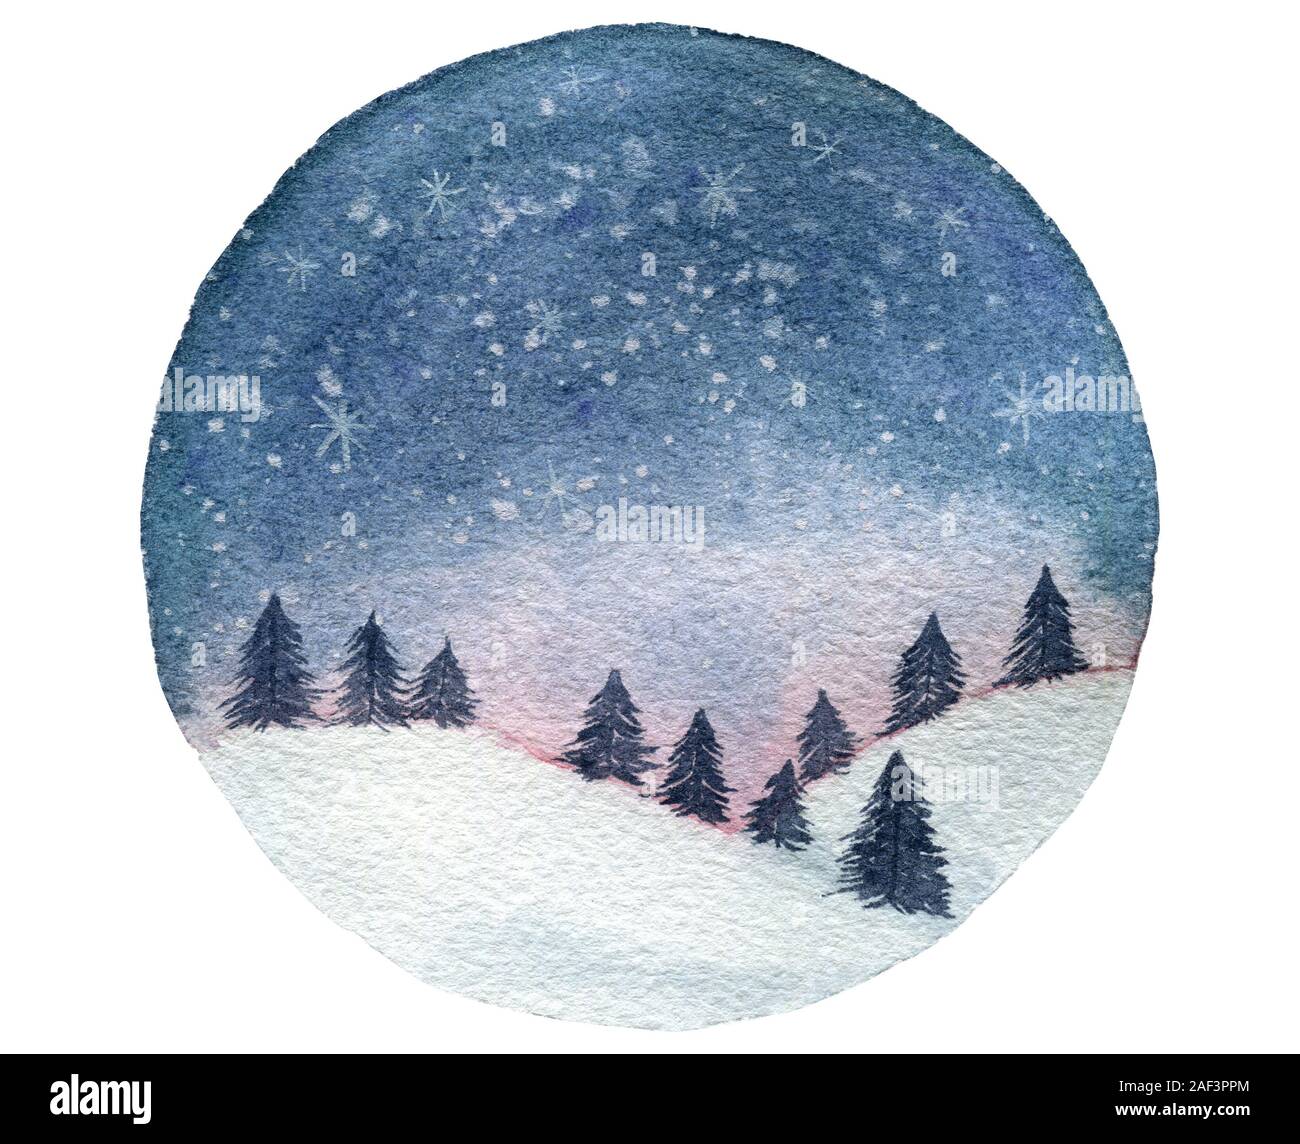 Aquarelle paysage d'hiver avec des arbres et le bleu ciel de nuit, hiver globe design avec ciel étoilé, aquarelle fond de noël isolé sur whit Banque D'Images